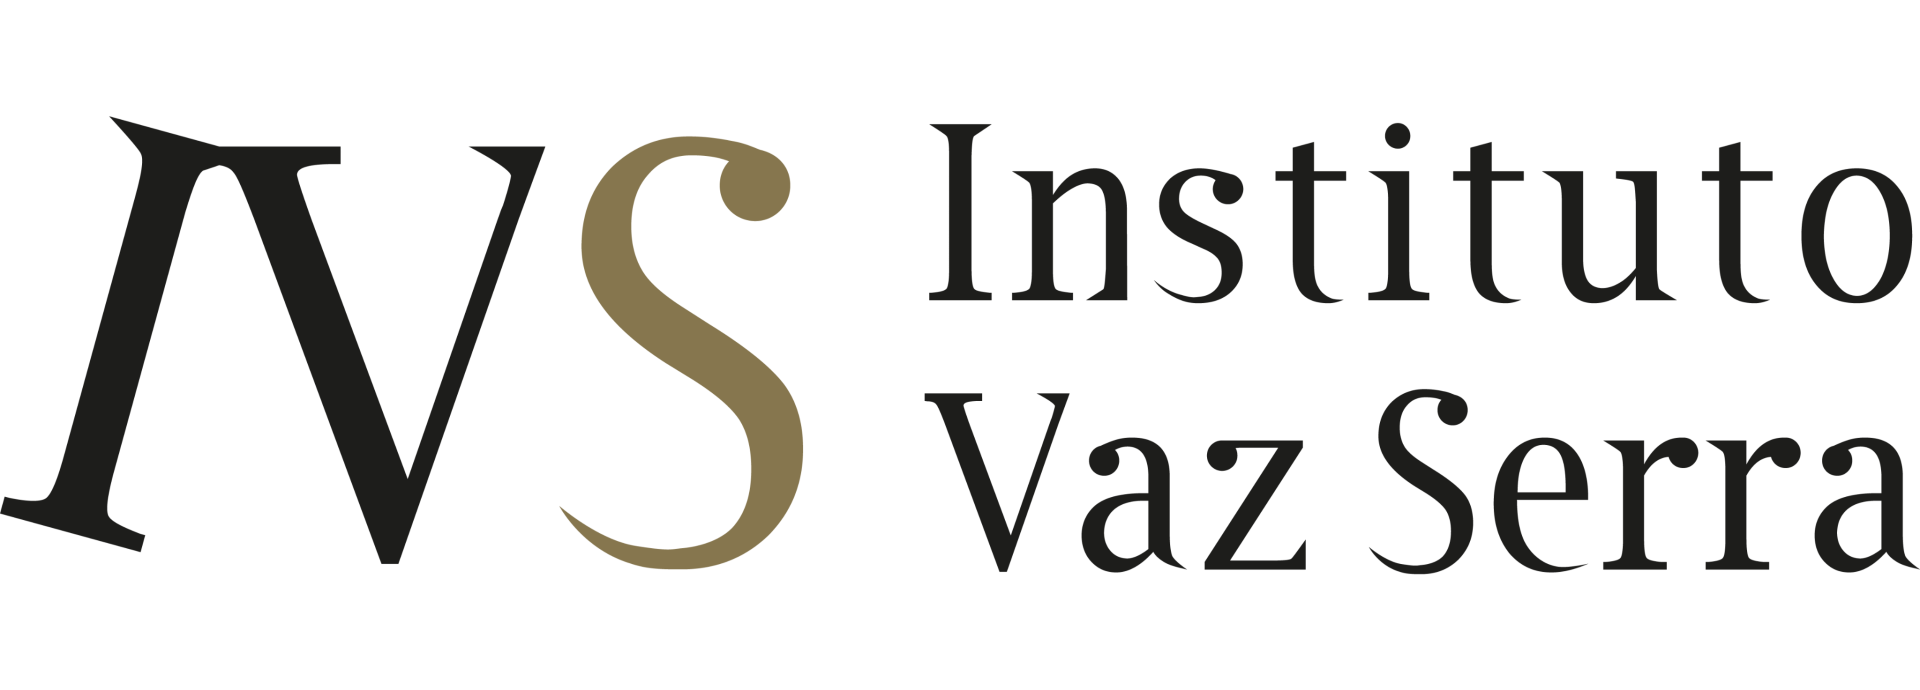 Instituto Vaz Serra